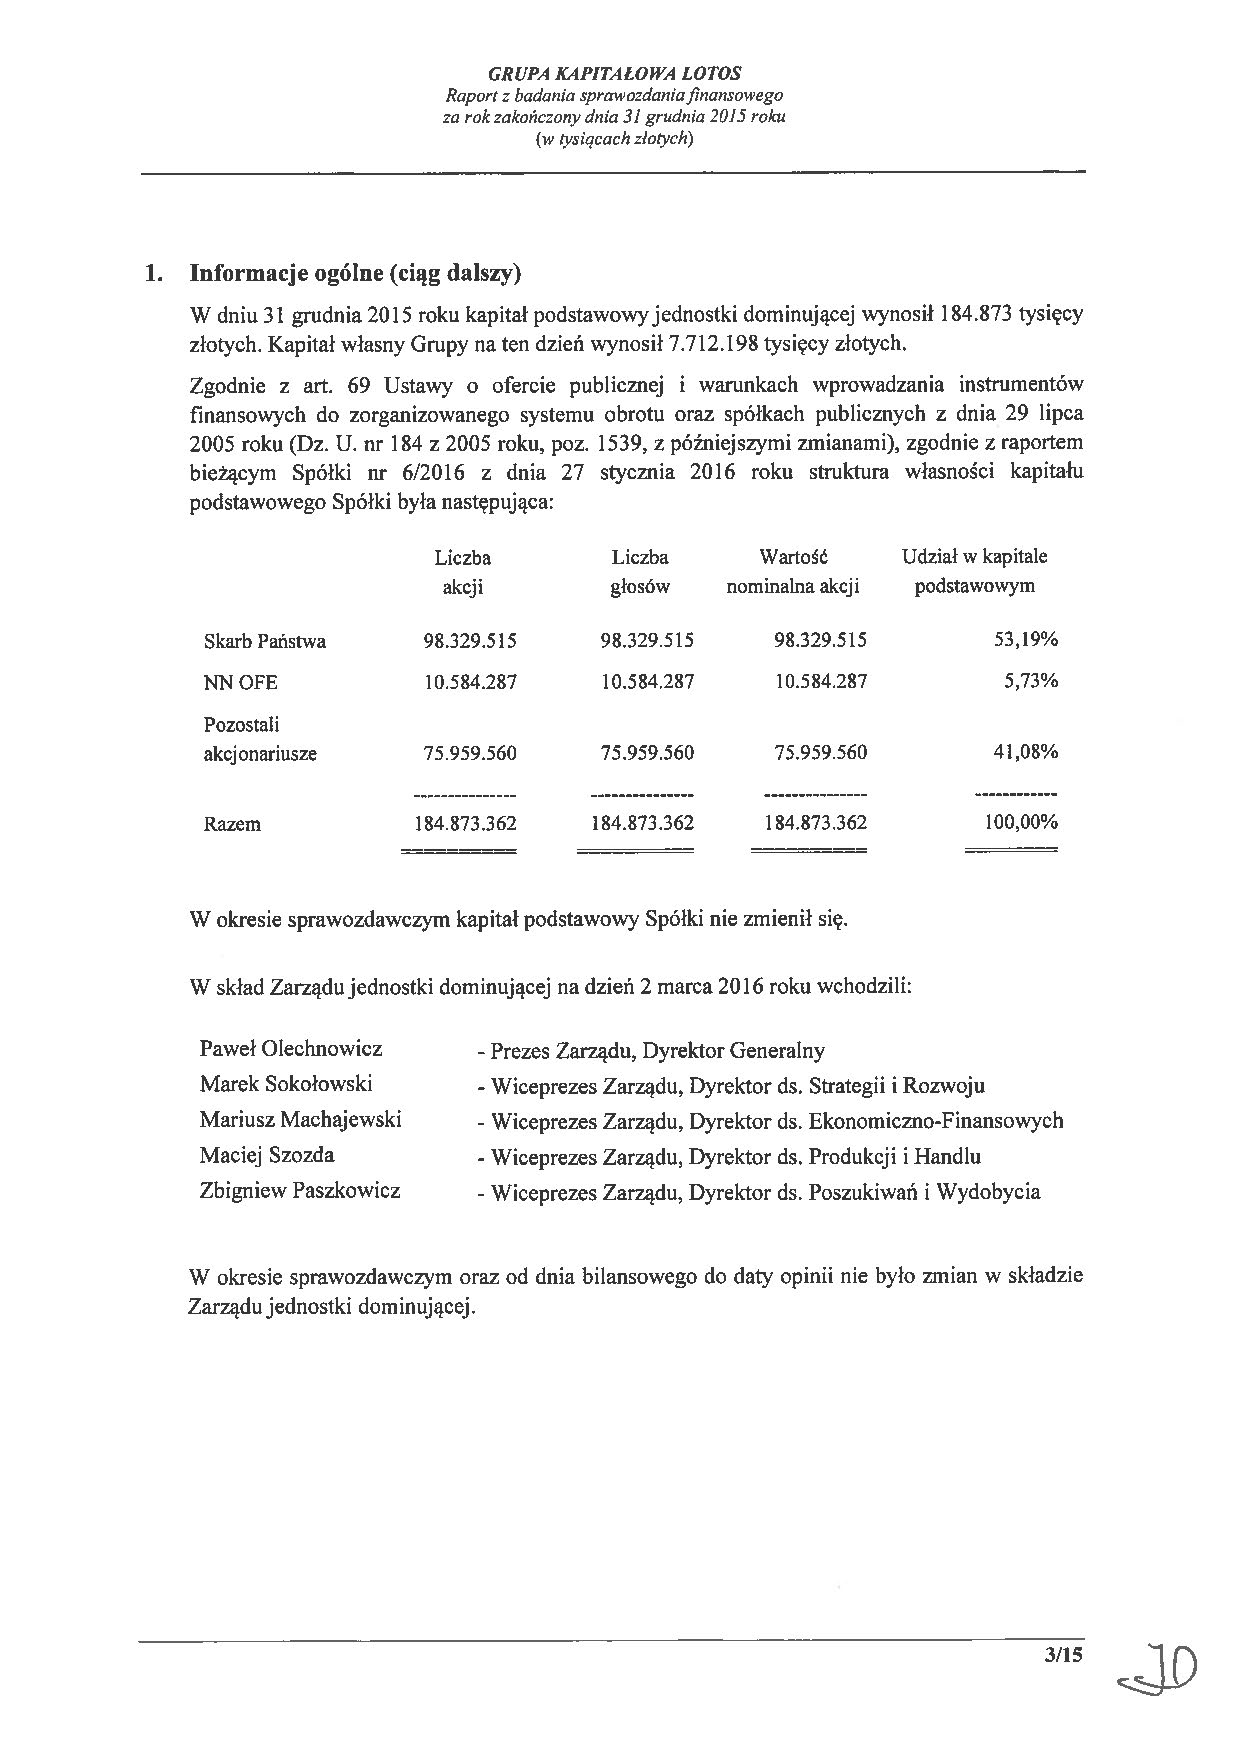 Grupa Kapitalowa LOTOS 2015 - Raport audytora z badania Skonsolidowanego Sprawozdania Finansowego strona 3